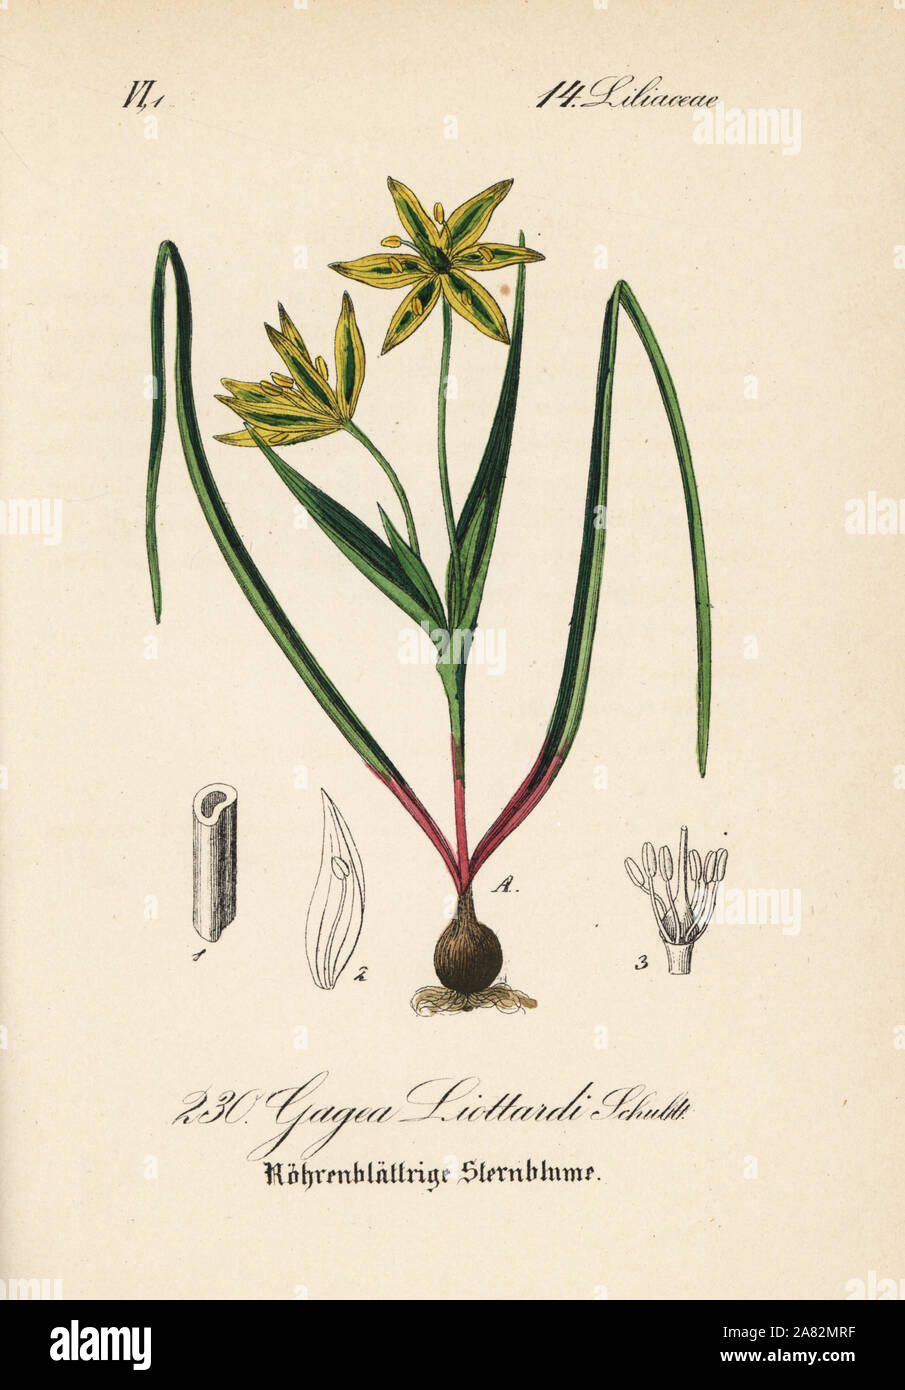 Gagea liottardi. Papierkörbe Lithographie von Diederich von Schlechtendal der Deutschen Flora (Flora von Deutschland), Jena, 1871. Stockfoto